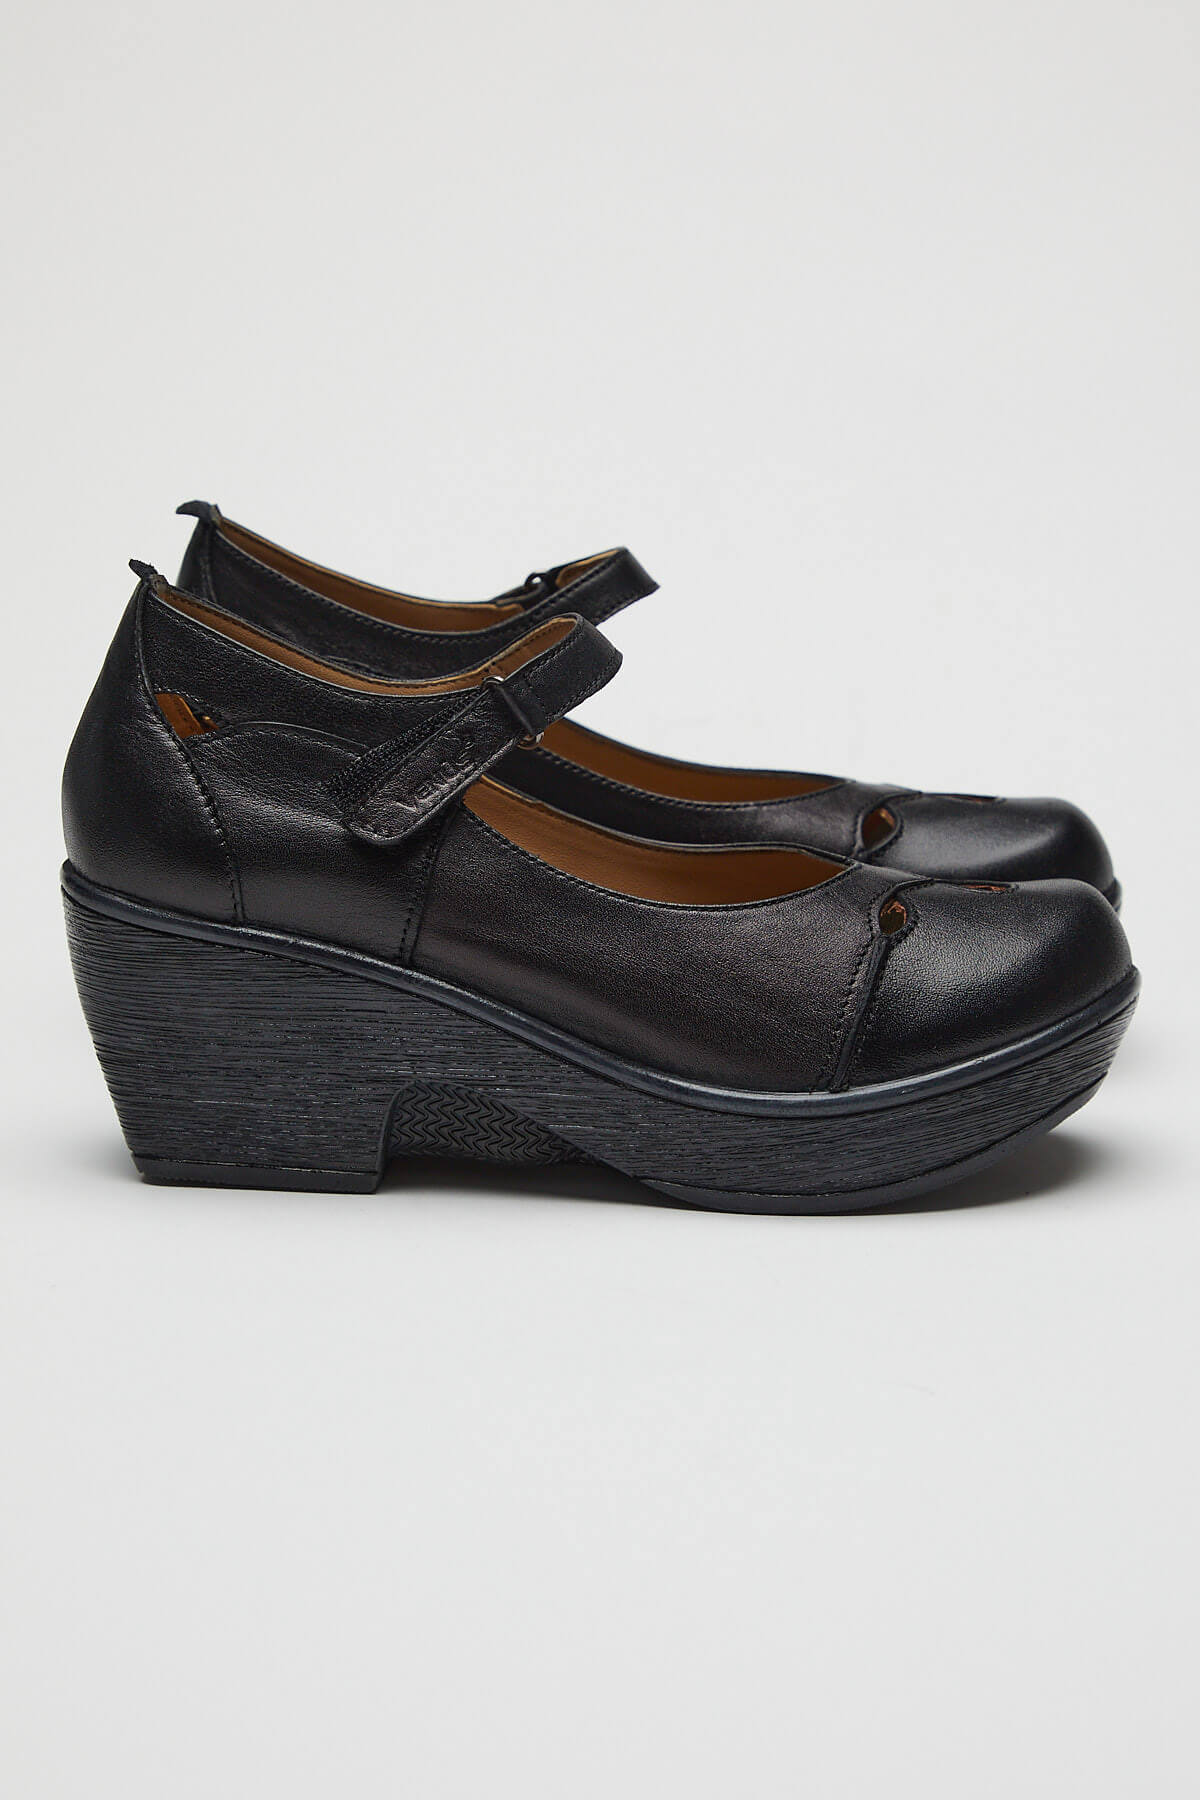 Kadın Apartman Topuk Deri Ayakkabı Siyah 1912501 - Thumbnail